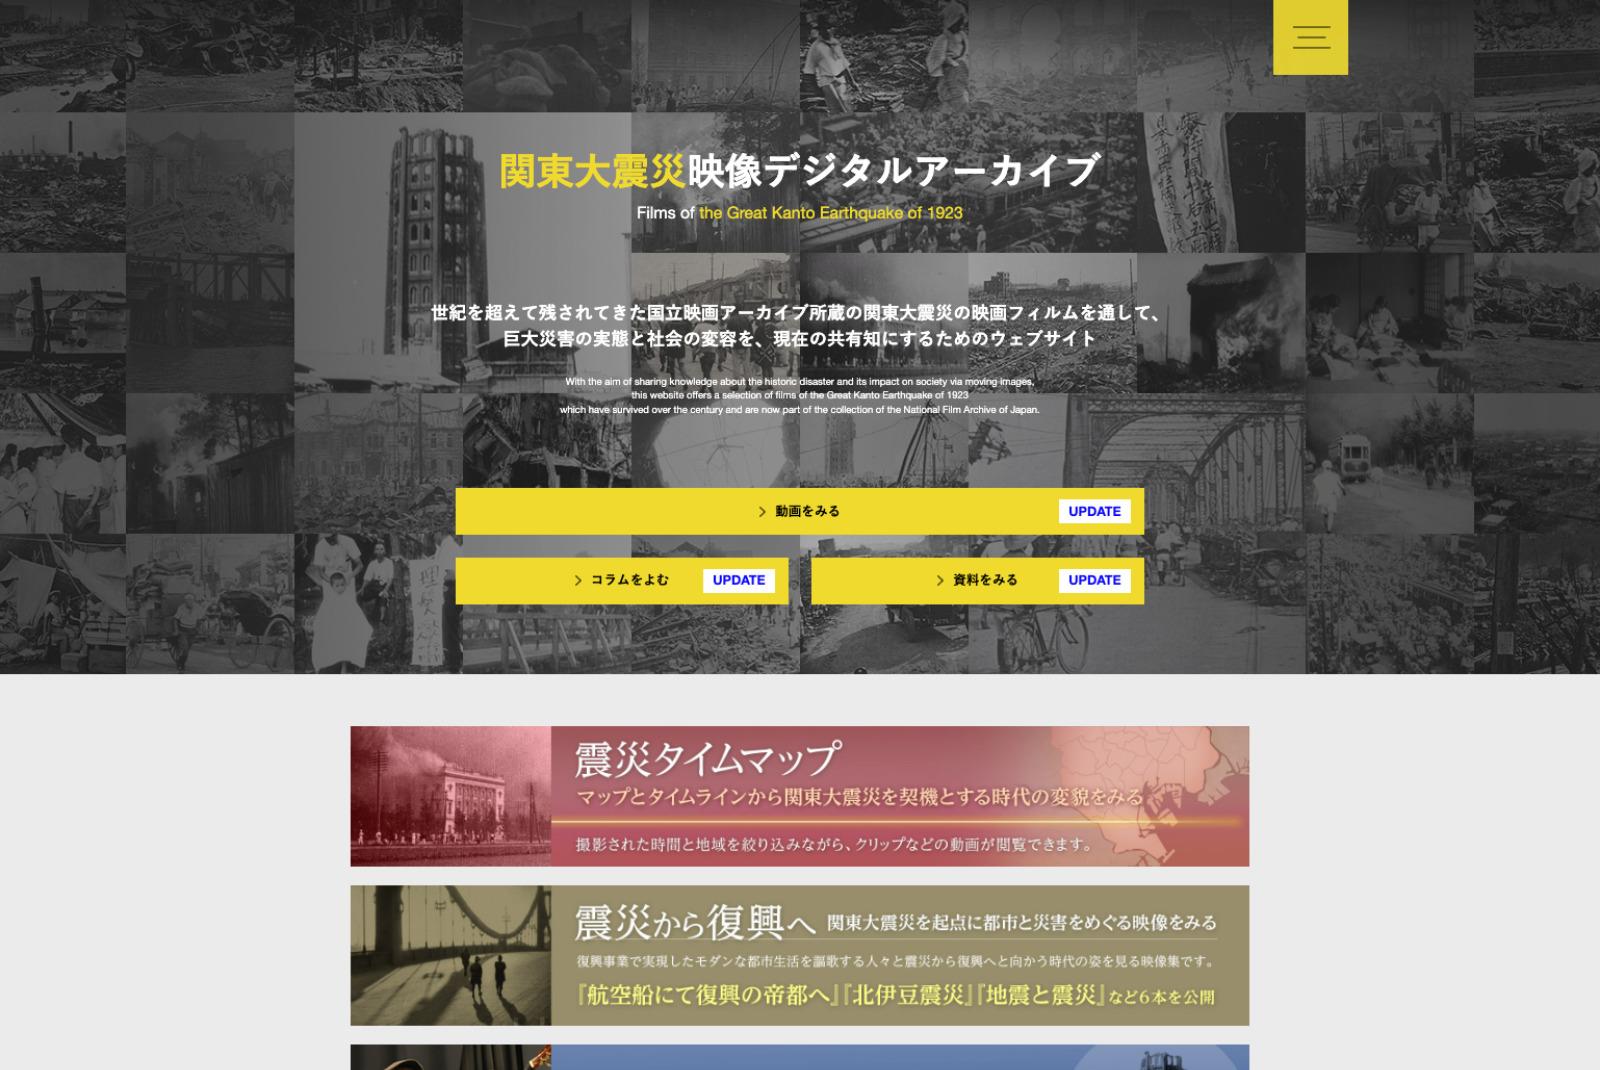 関東大震災映像デジタルアーカイブのアイキャッチ画像